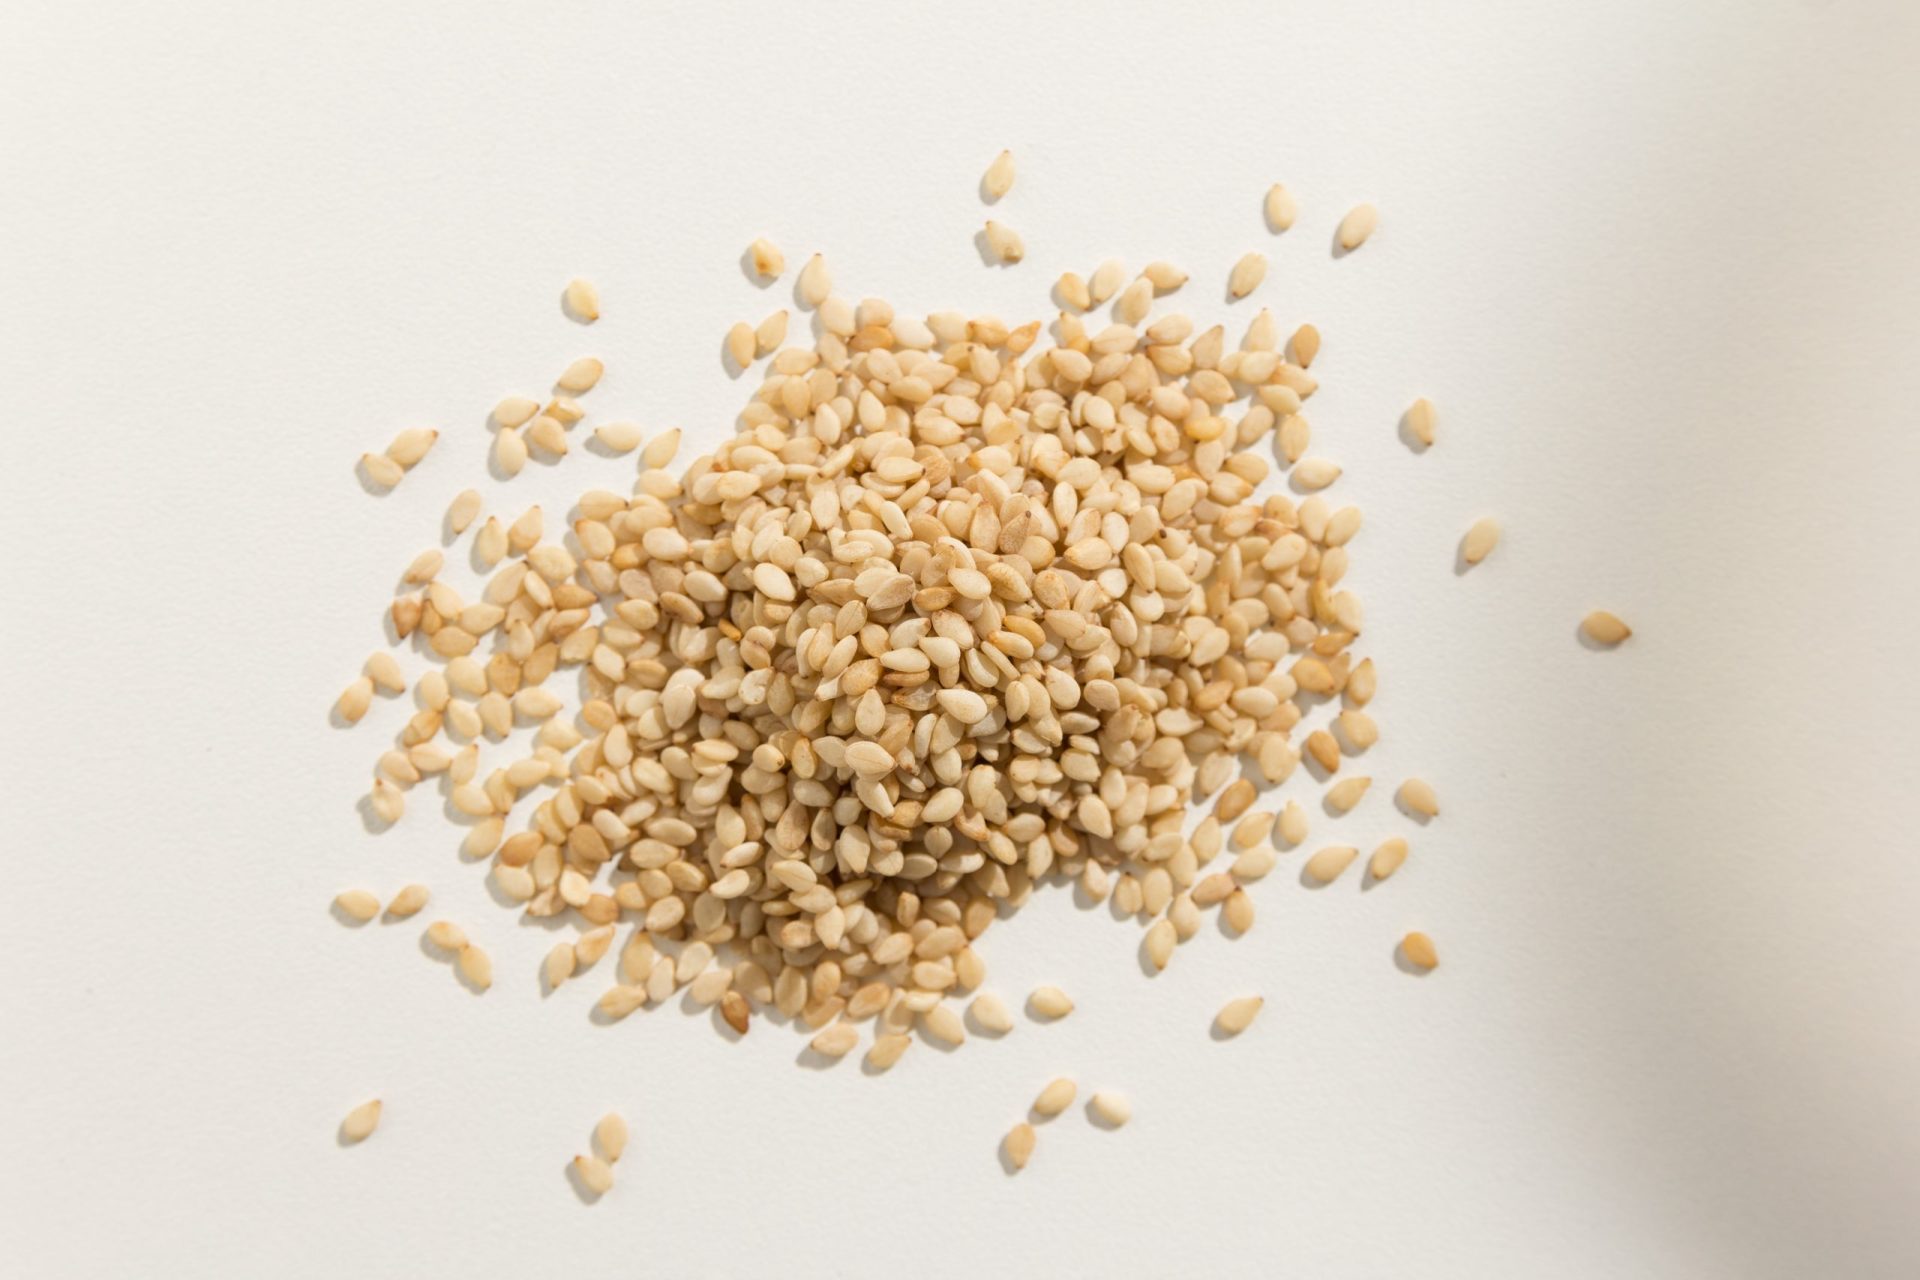 Atenção: Lotes de sementes de sésamo provenientes da Índia representam “risco grave” para a saúde